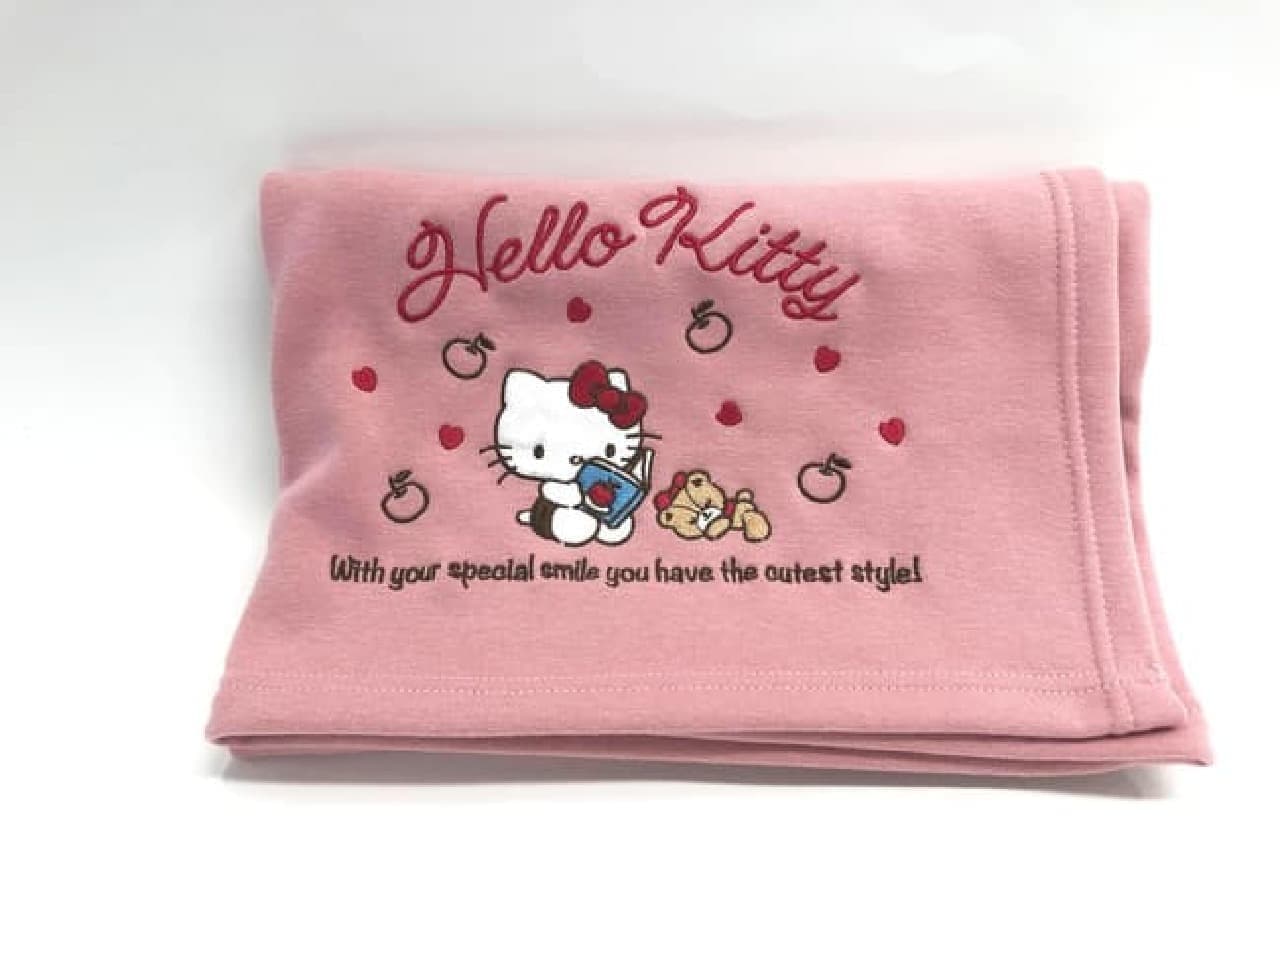 Post office "Hello Kitty goods"